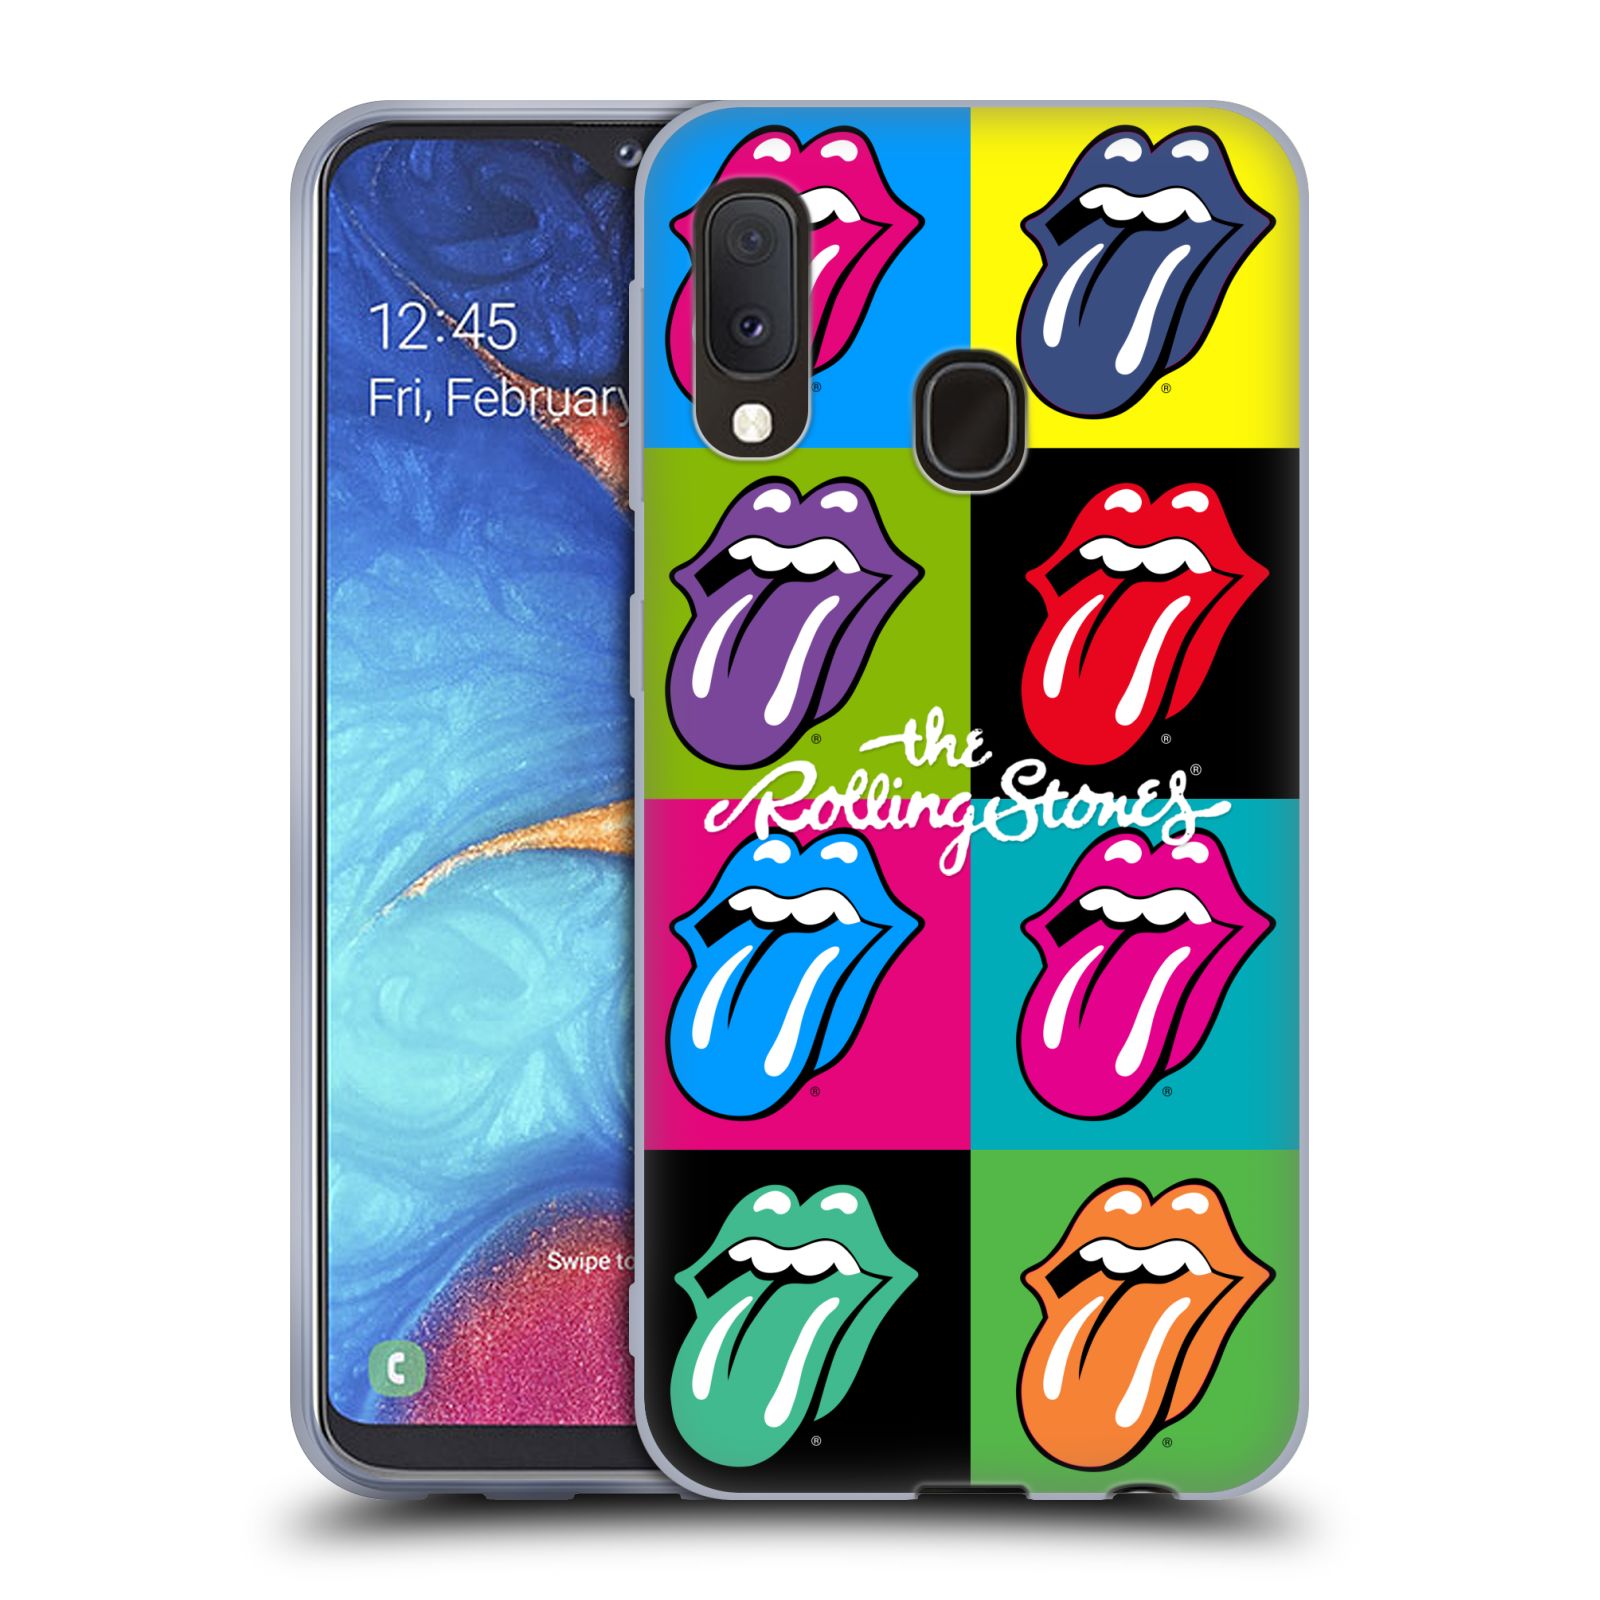 Silikonové pouzdro na mobil Samsung Galaxy A20e - Head Case - The Rolling Stones - Pop Art Vyplazené Jazyky